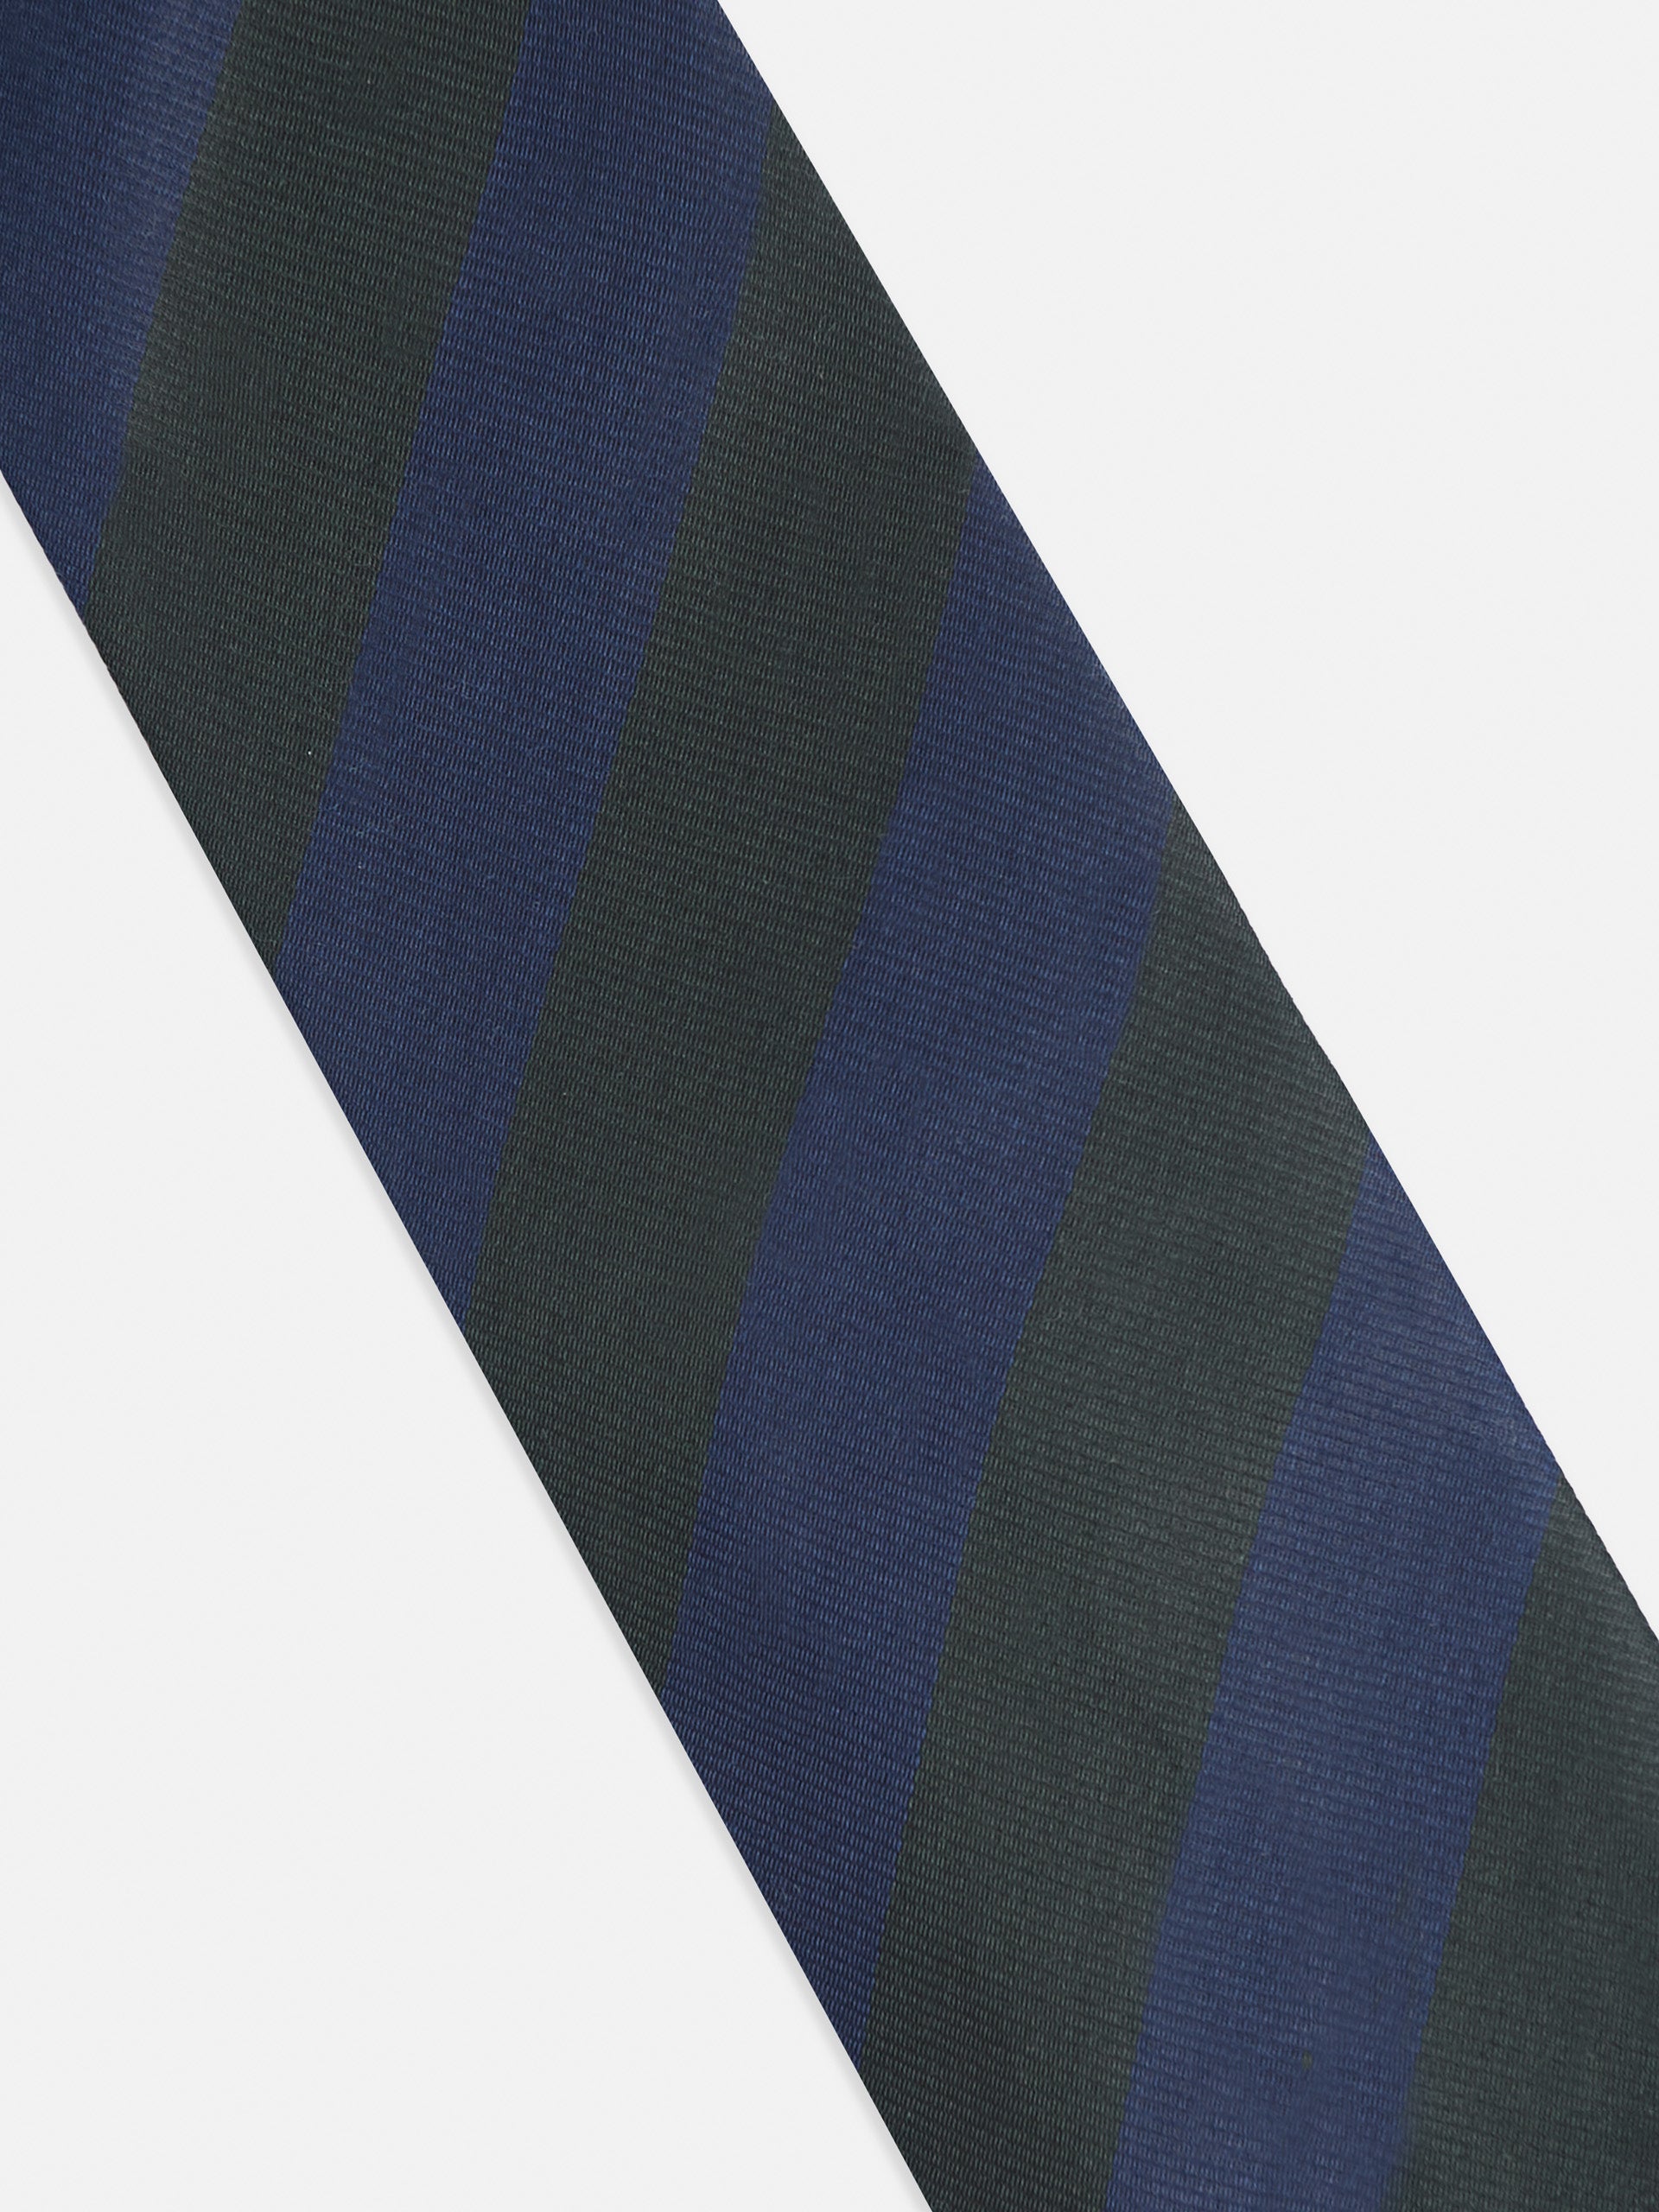 Green diagonal stripe tie